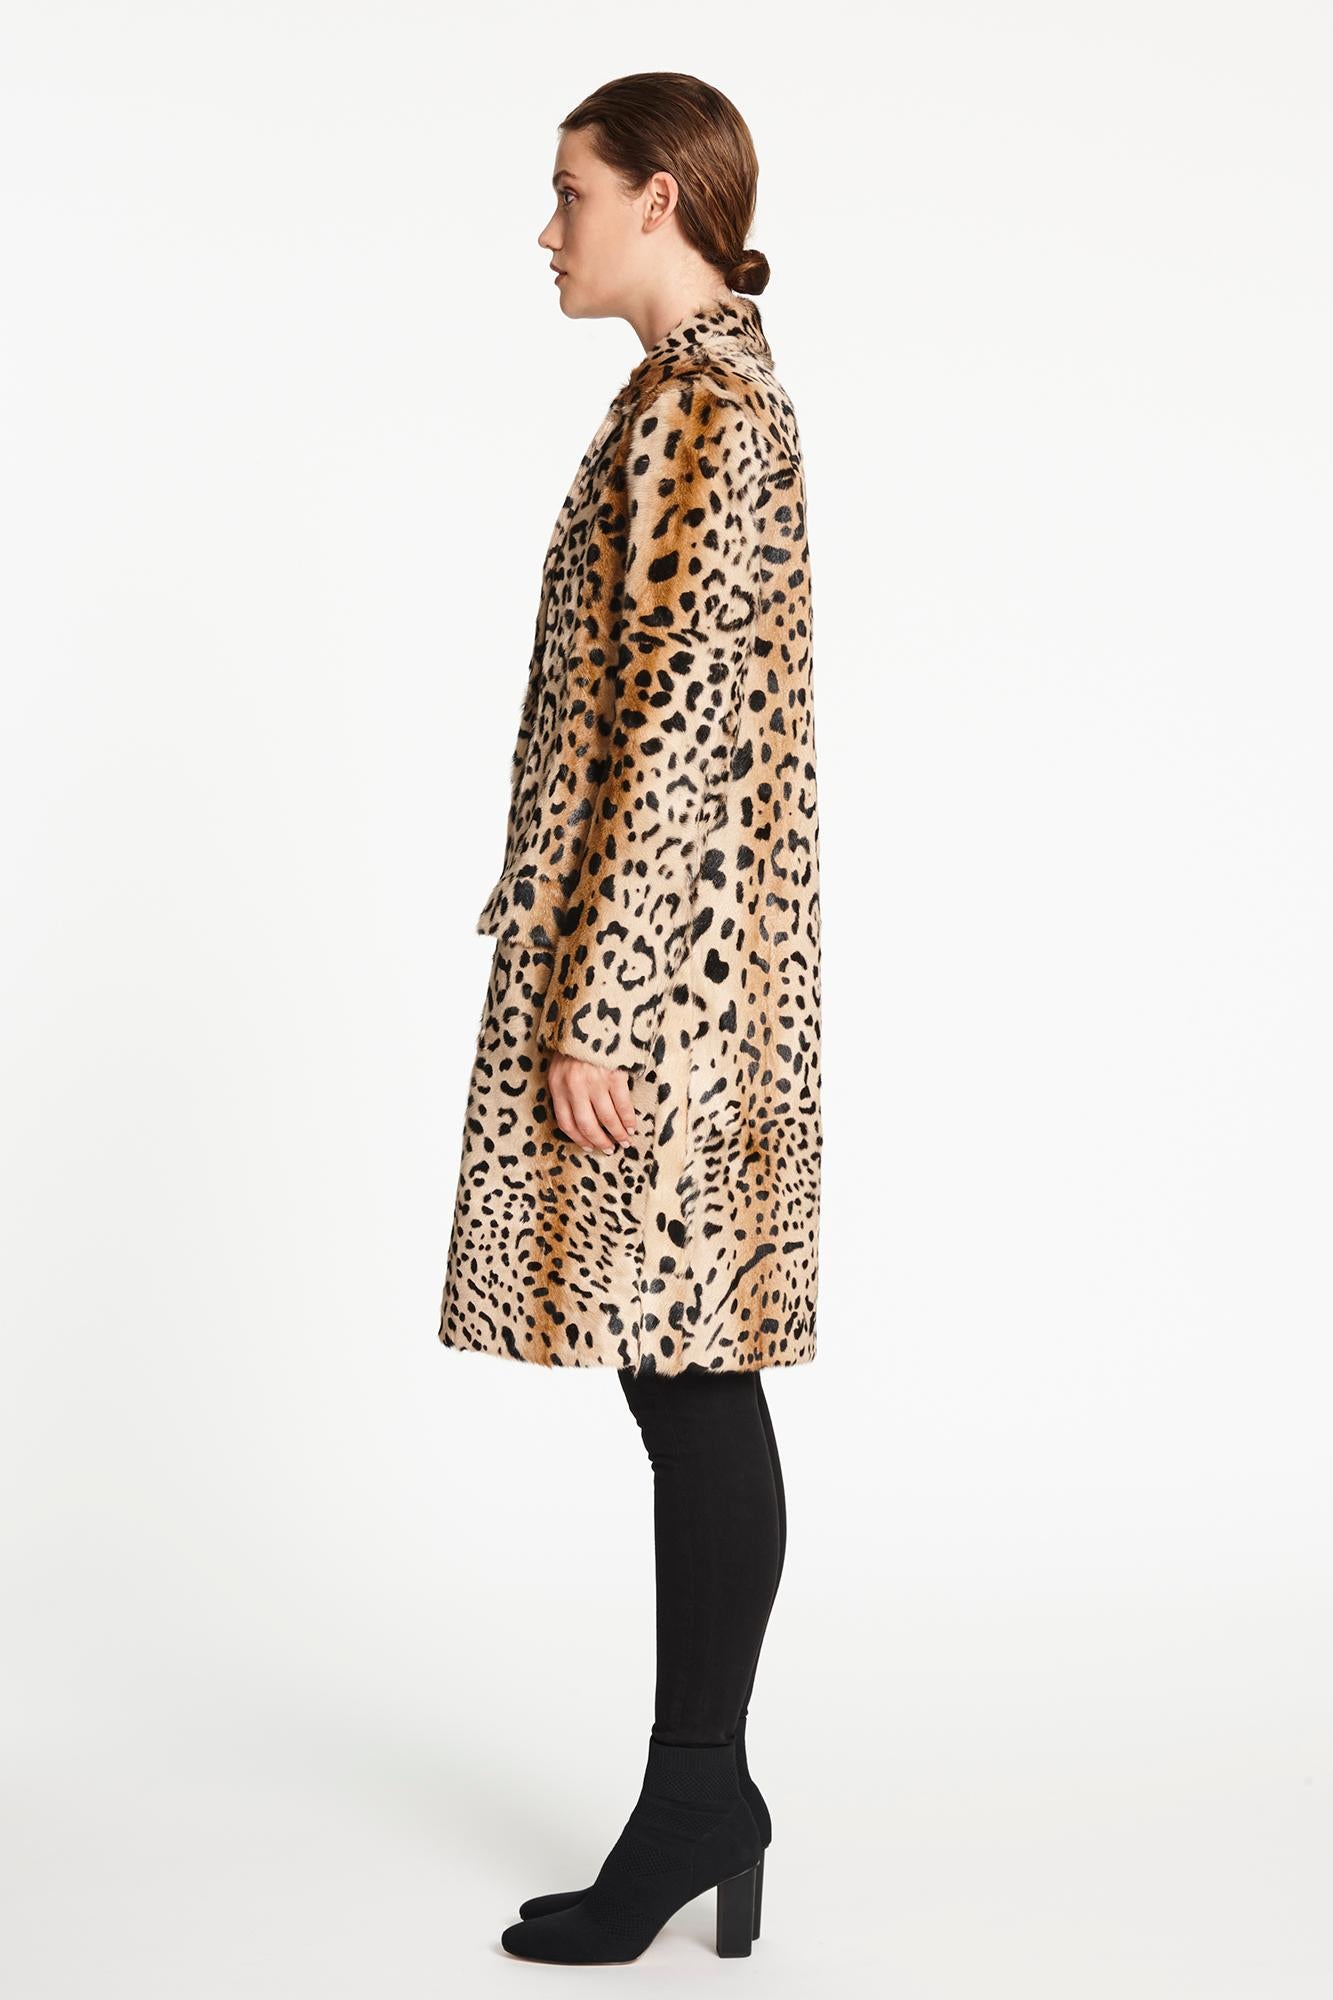 Verheyen London Leopard Print Coat in Natural Goat Hair Fur UK 8 - Brand New  2